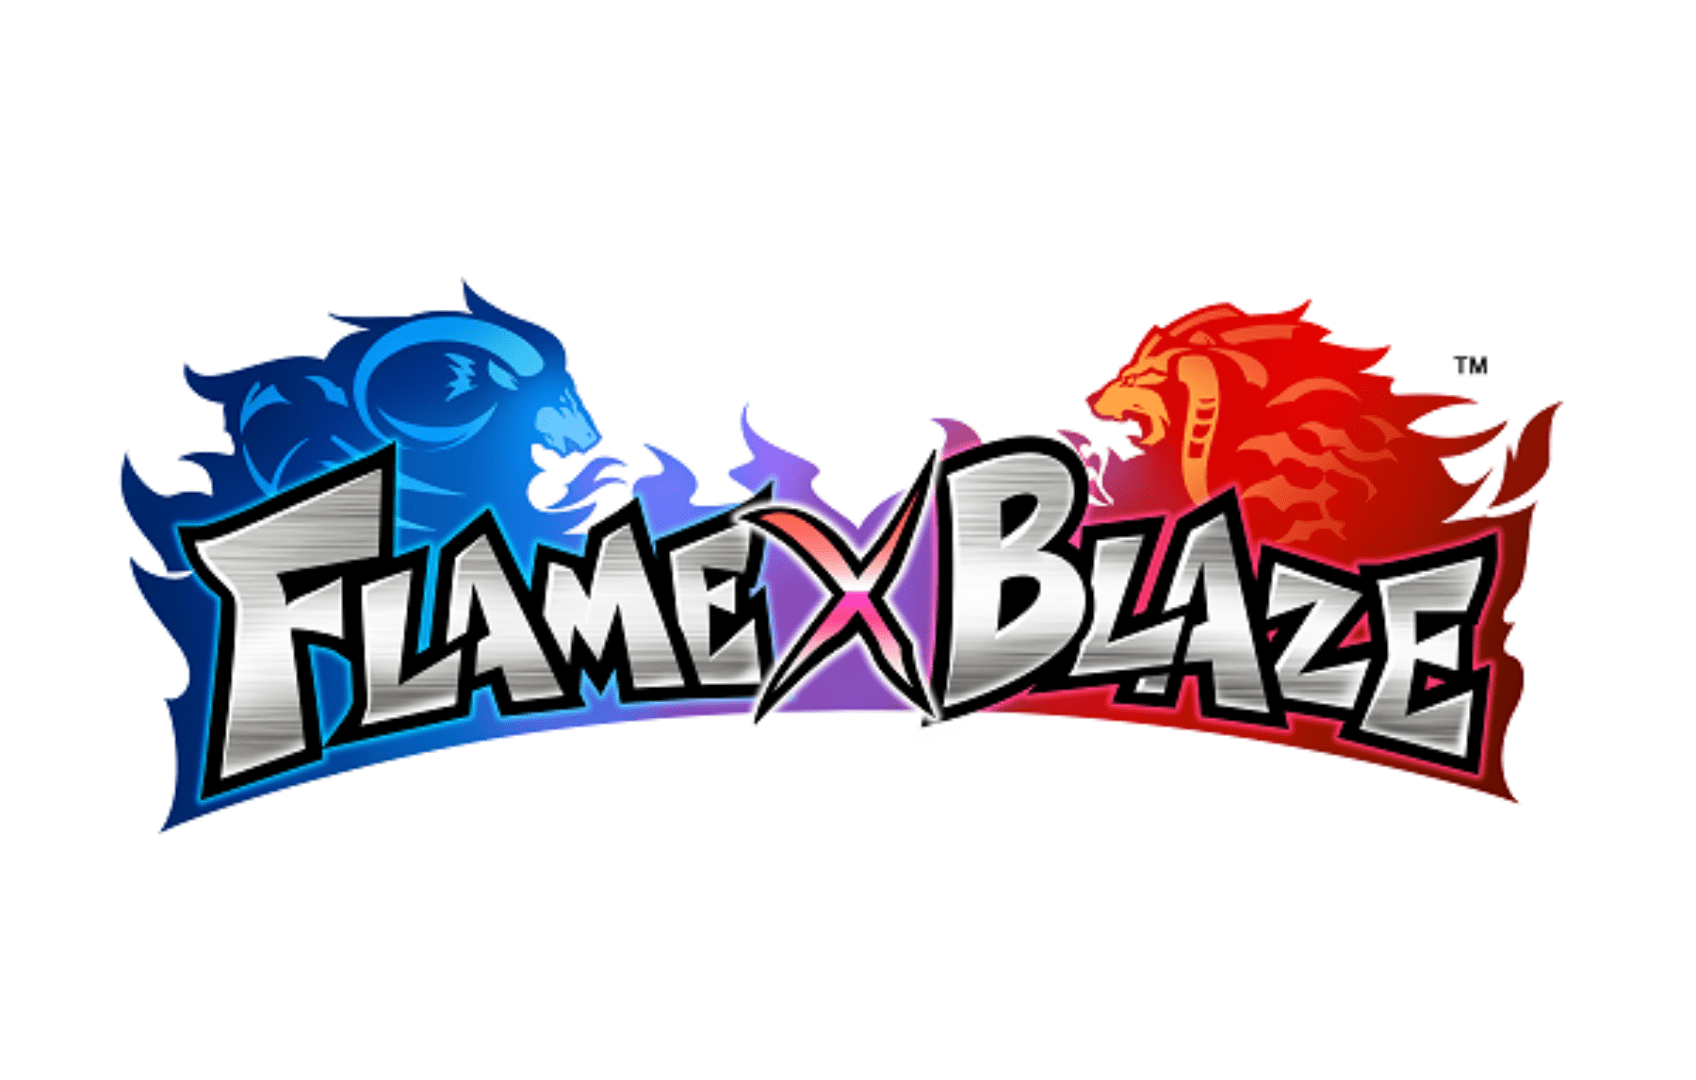 FLAME VS BLAZE